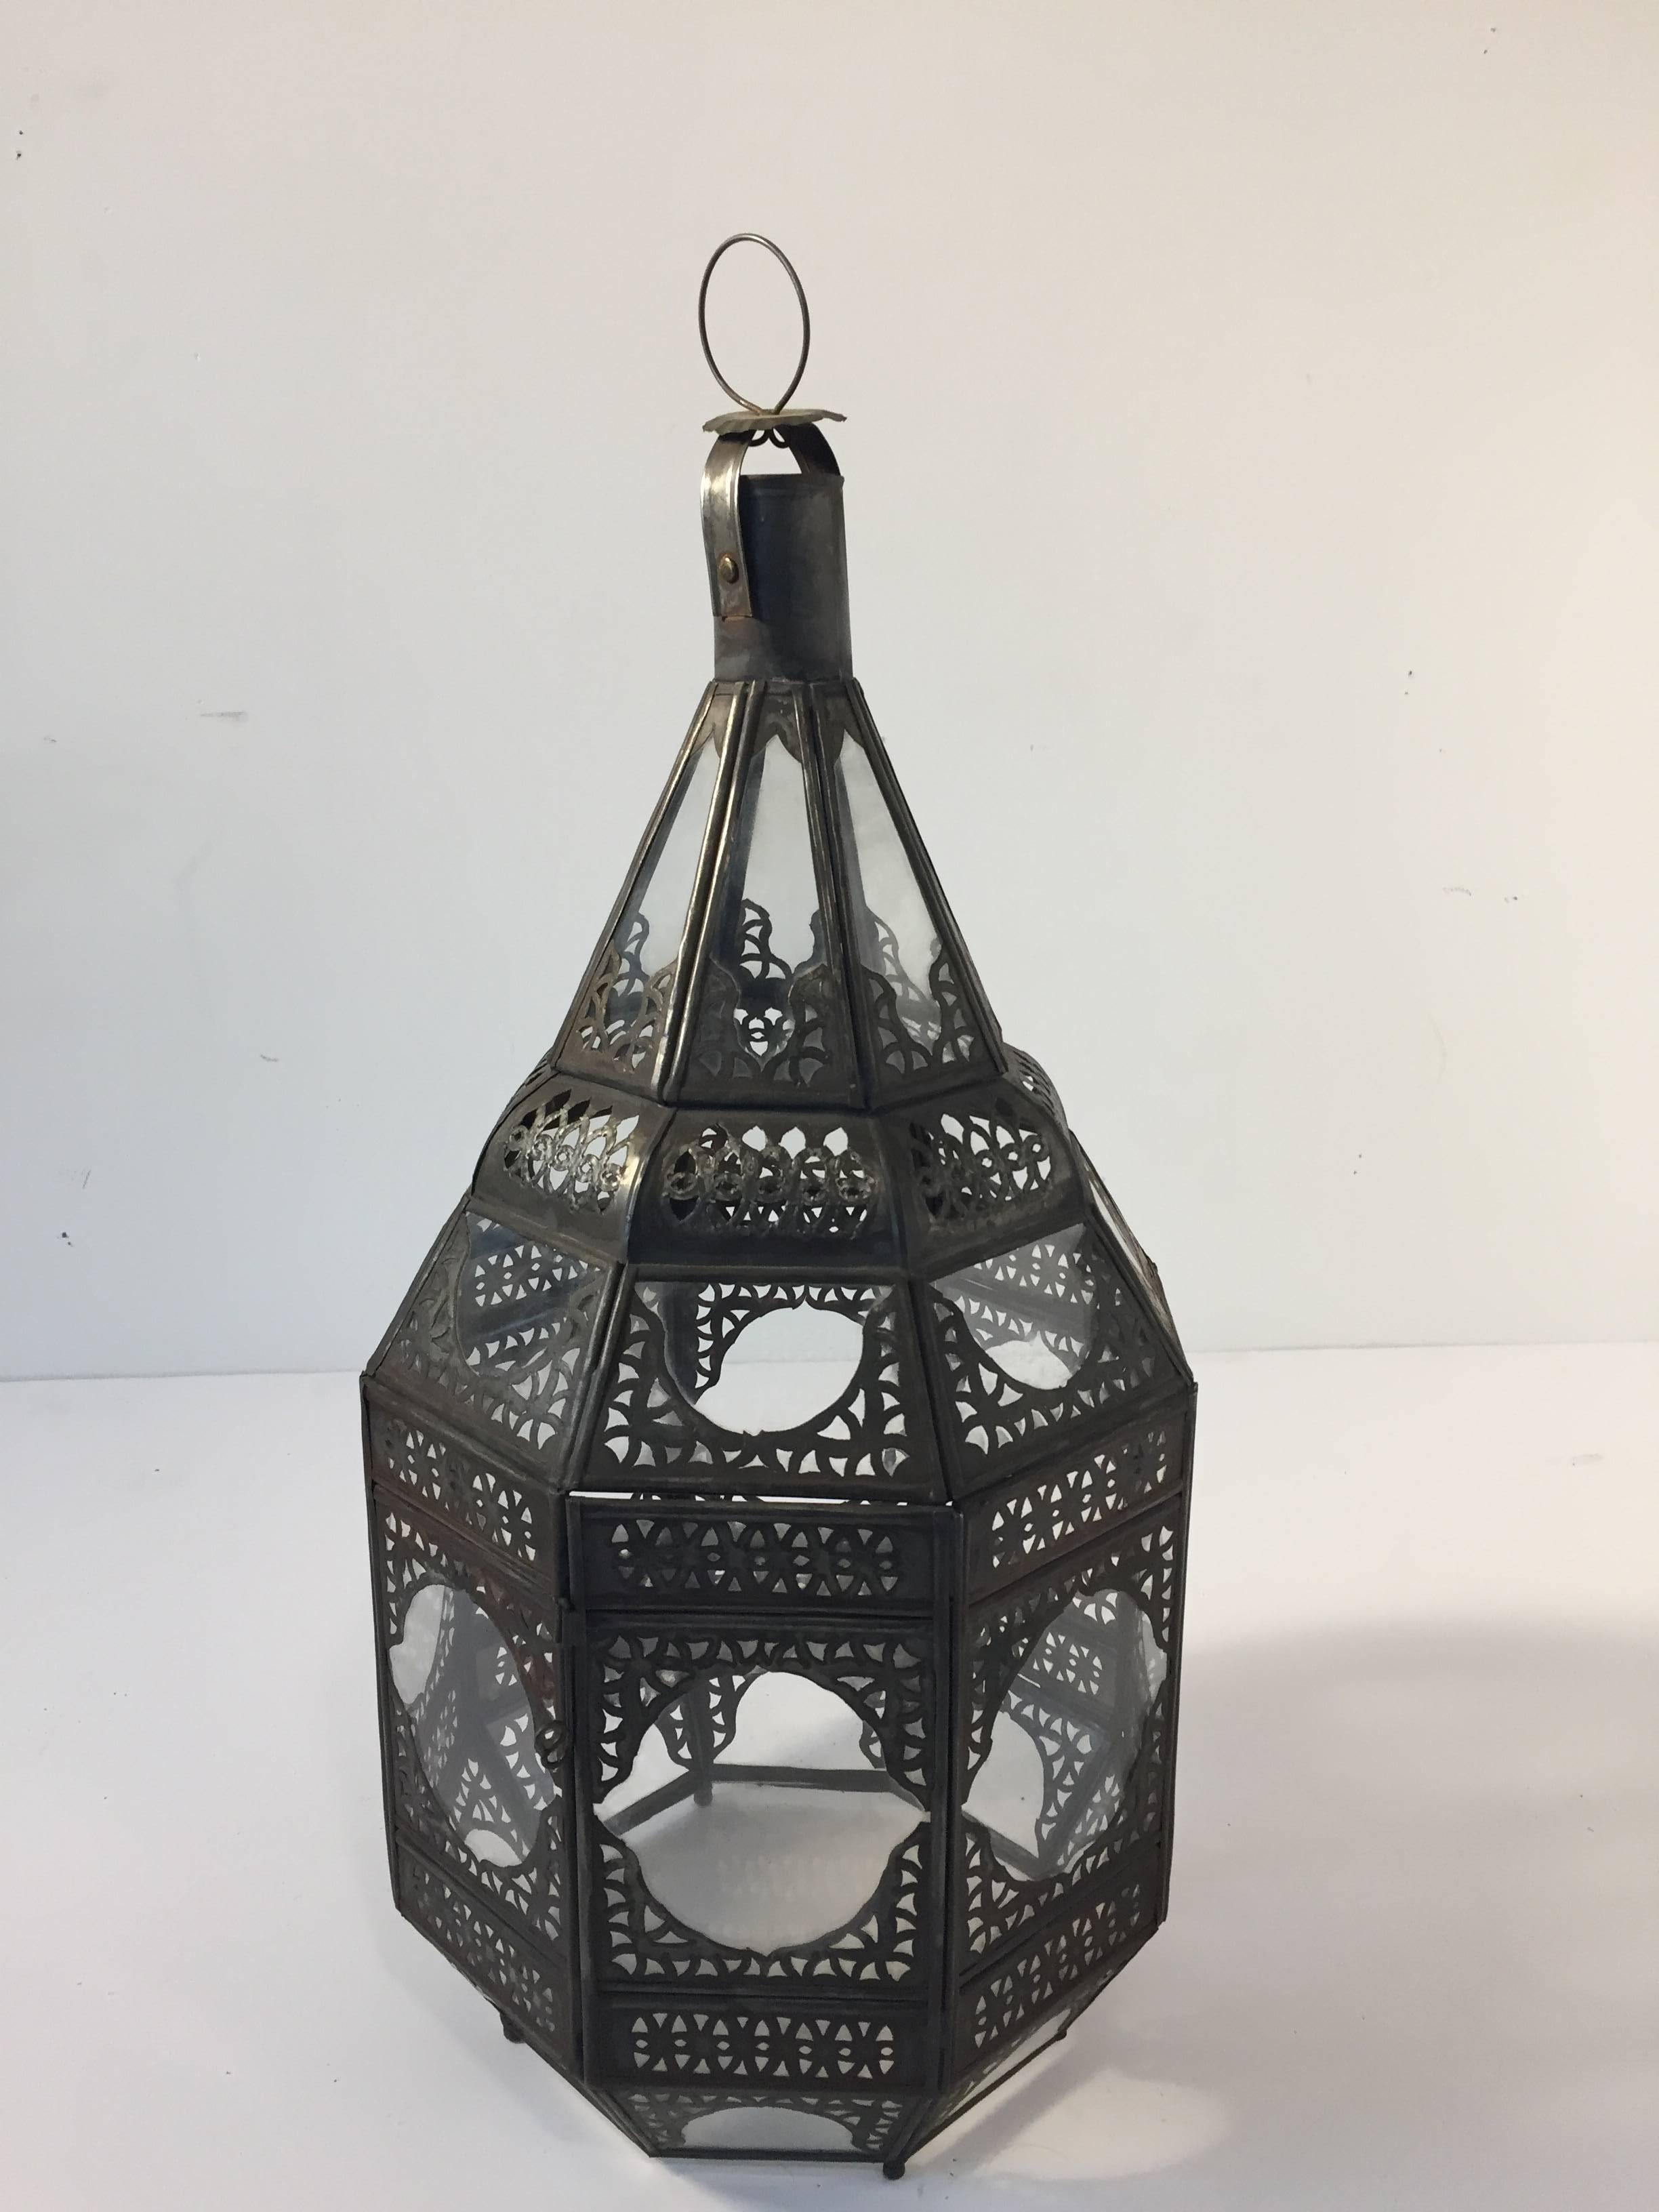 Marokkanische Laterne aus klarem Glas mit filigranen Metallverzierungen.
Achteckige Form, in feiner Handarbeit von Kunsthandwerkern in Marokko hergestellt.
Bronzefarbene Metalloberfläche.
Kann mit einer Kerze oder mit einem Stromanschluss verwendet